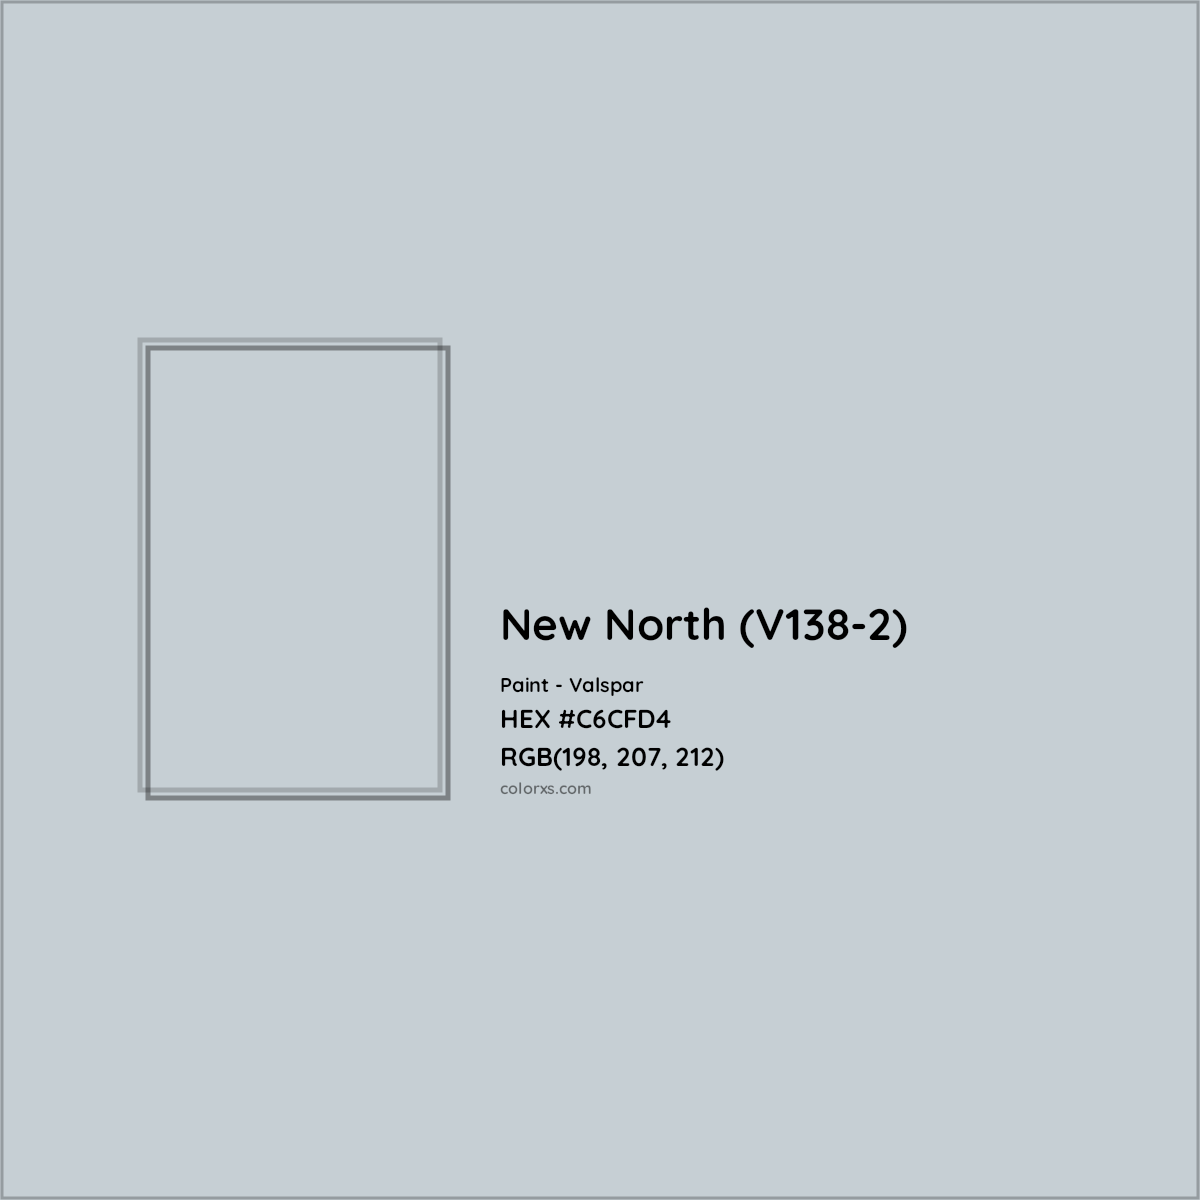 HEX #C6CFD4 New North (V138-2) Paint Valspar - Color Code